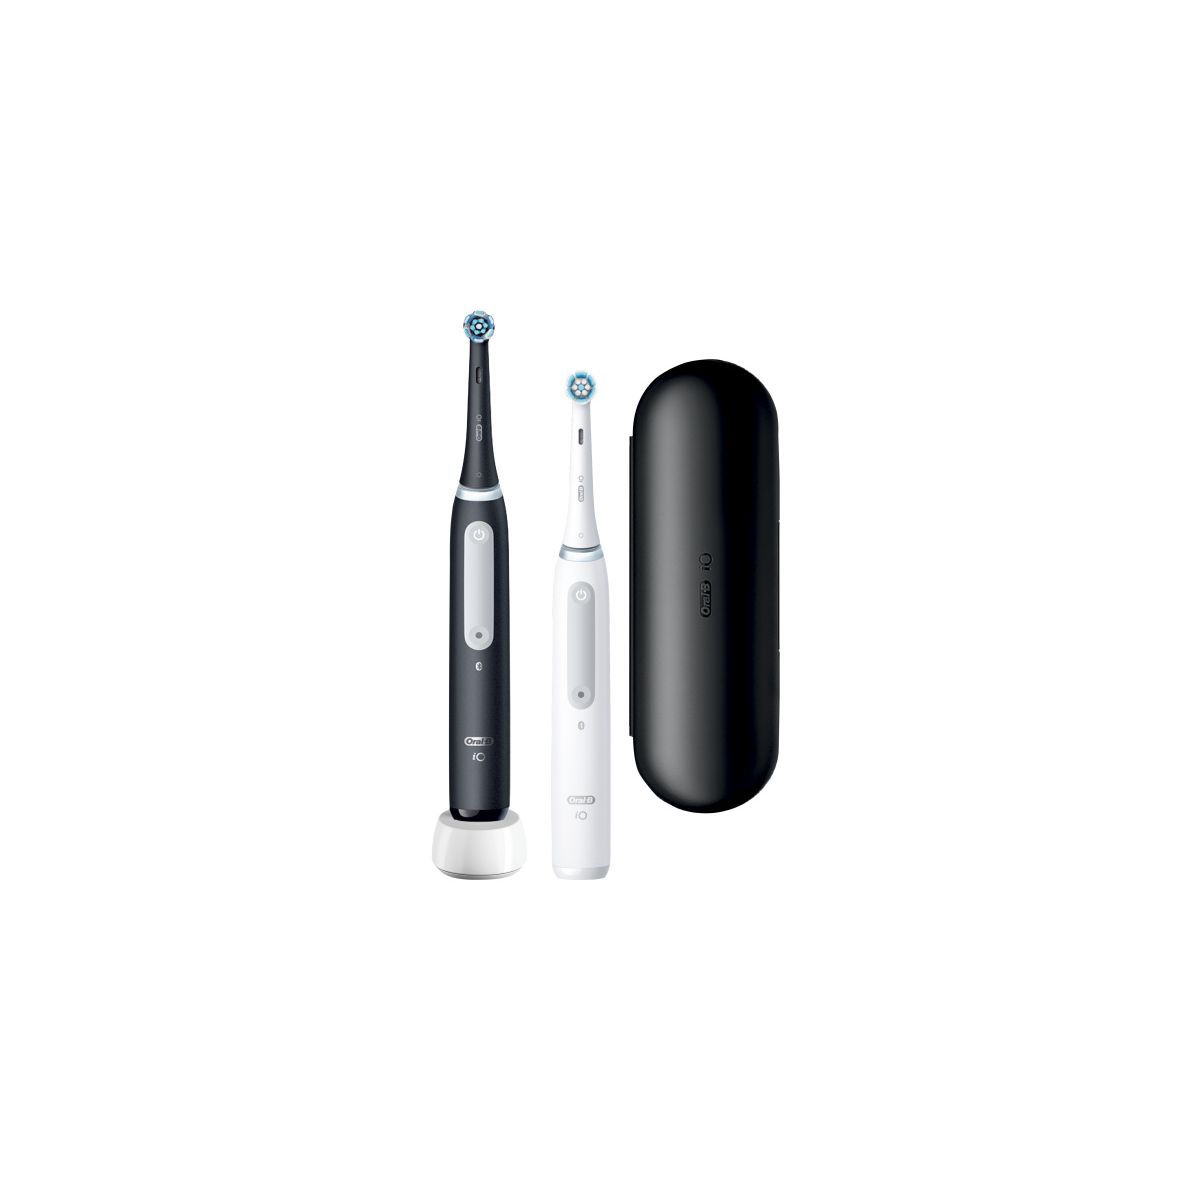 Oral-B iO Series 4 elektromos fogkefe Duo Pack, Matt Black -Quite White  (10PO010376) Szépségápolás & egészségmegőrzés